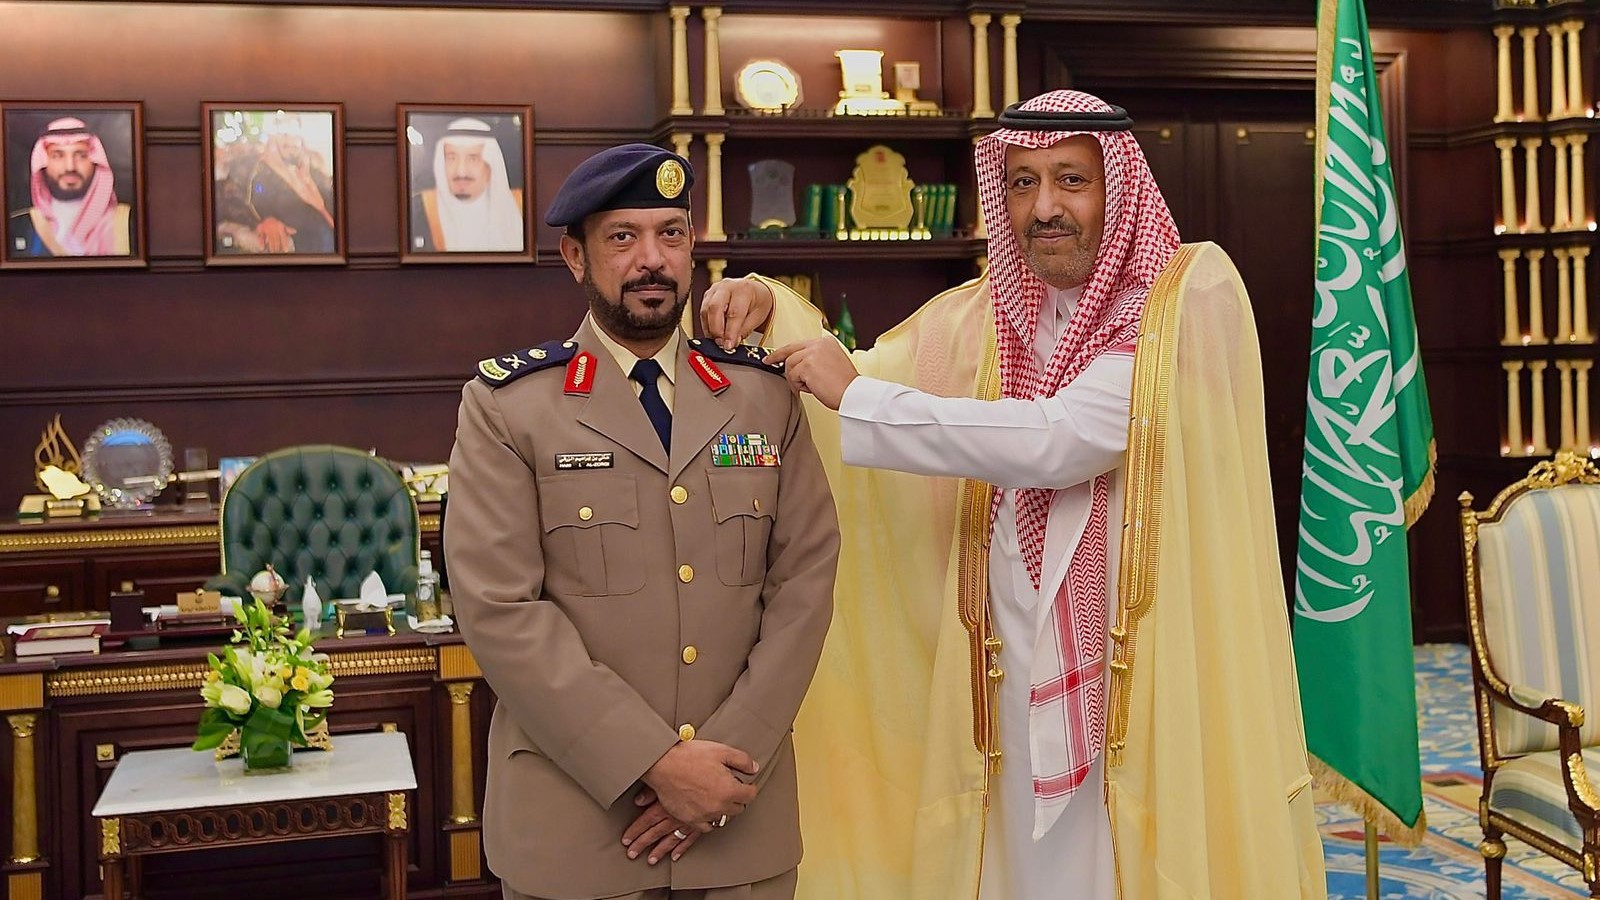 سمو أمير منطقة الباحة يقلد مدير الدفاع المدني بالمنطقة رتبته الجديدة “لواء”